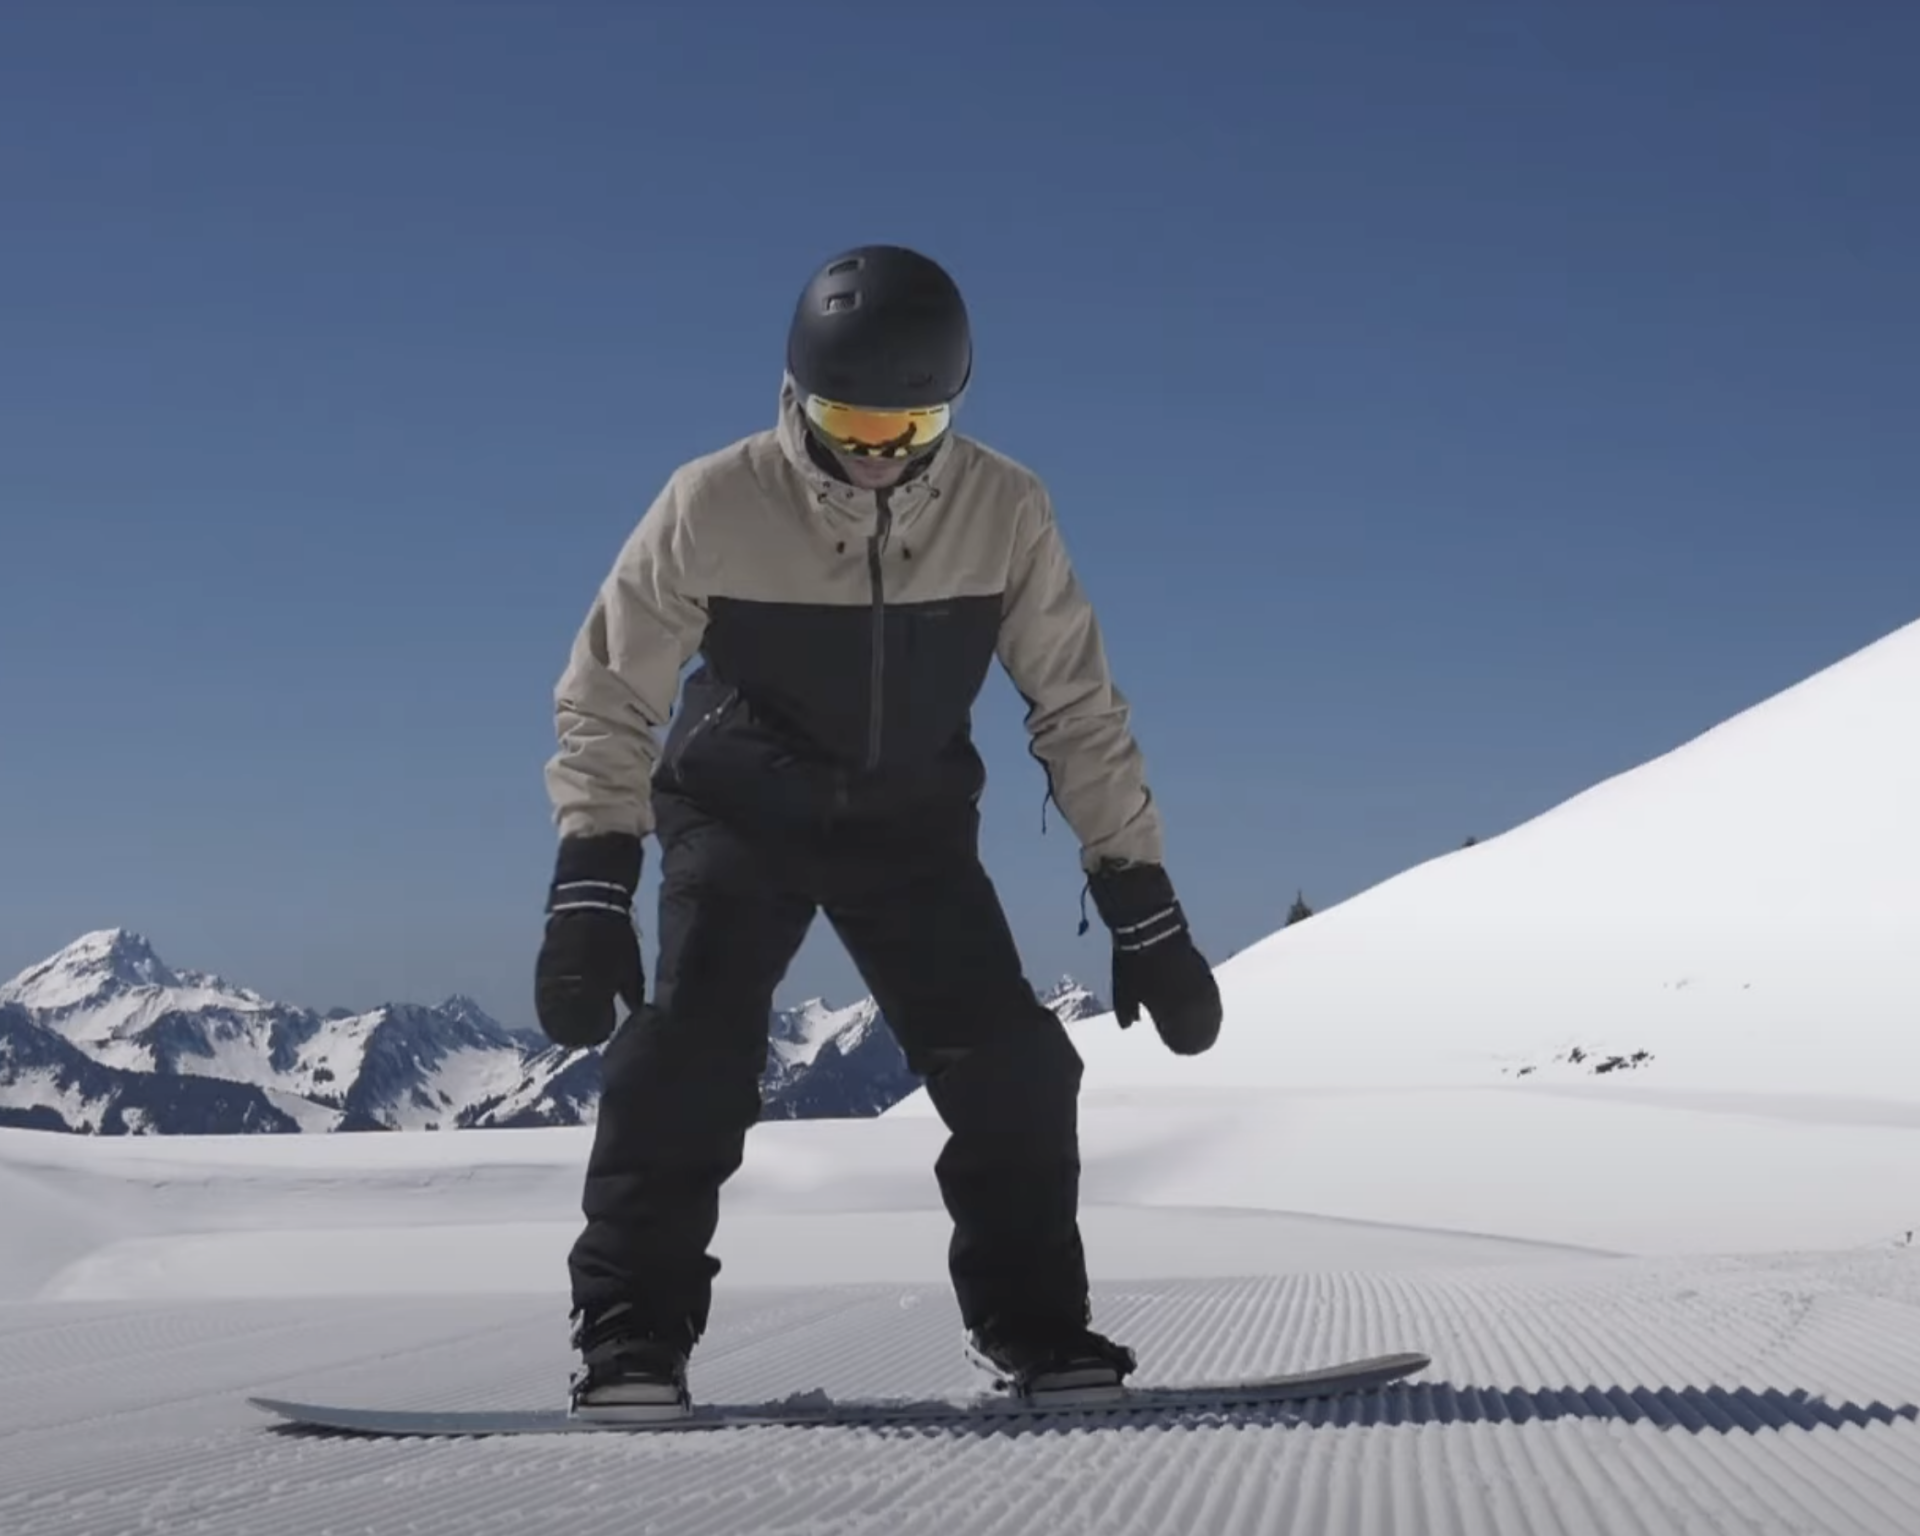 Comment faire un butter en snowboard ?